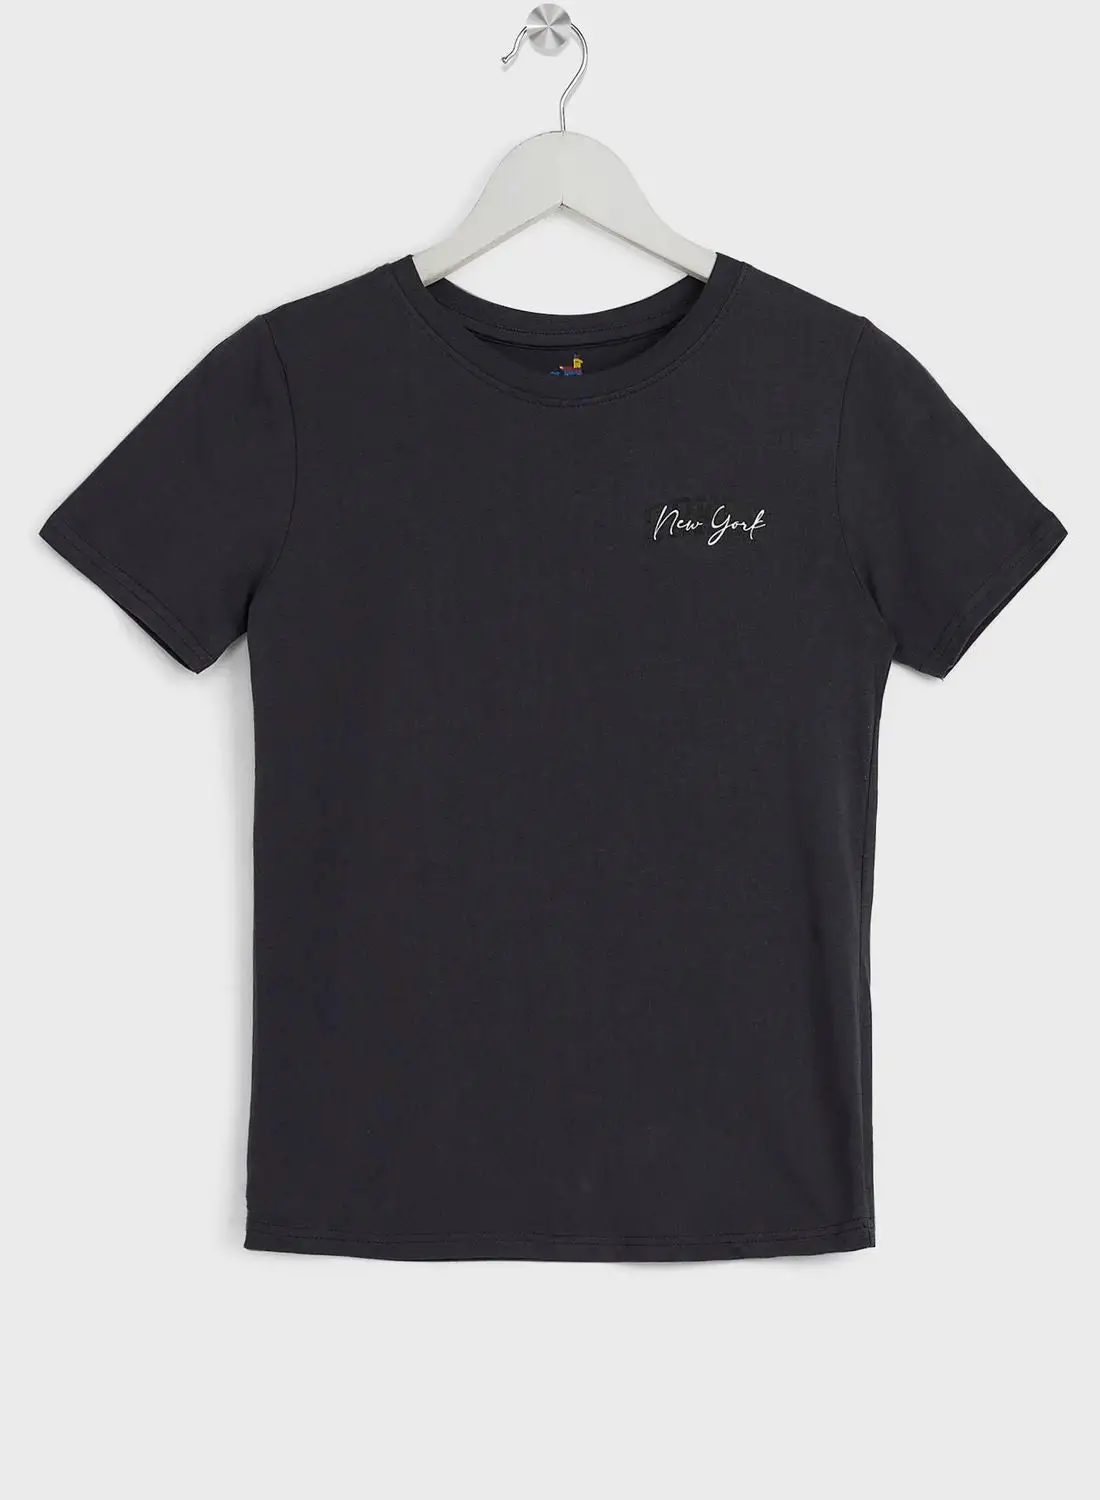 Pinata Boys Front And Back Printed T-Shirt